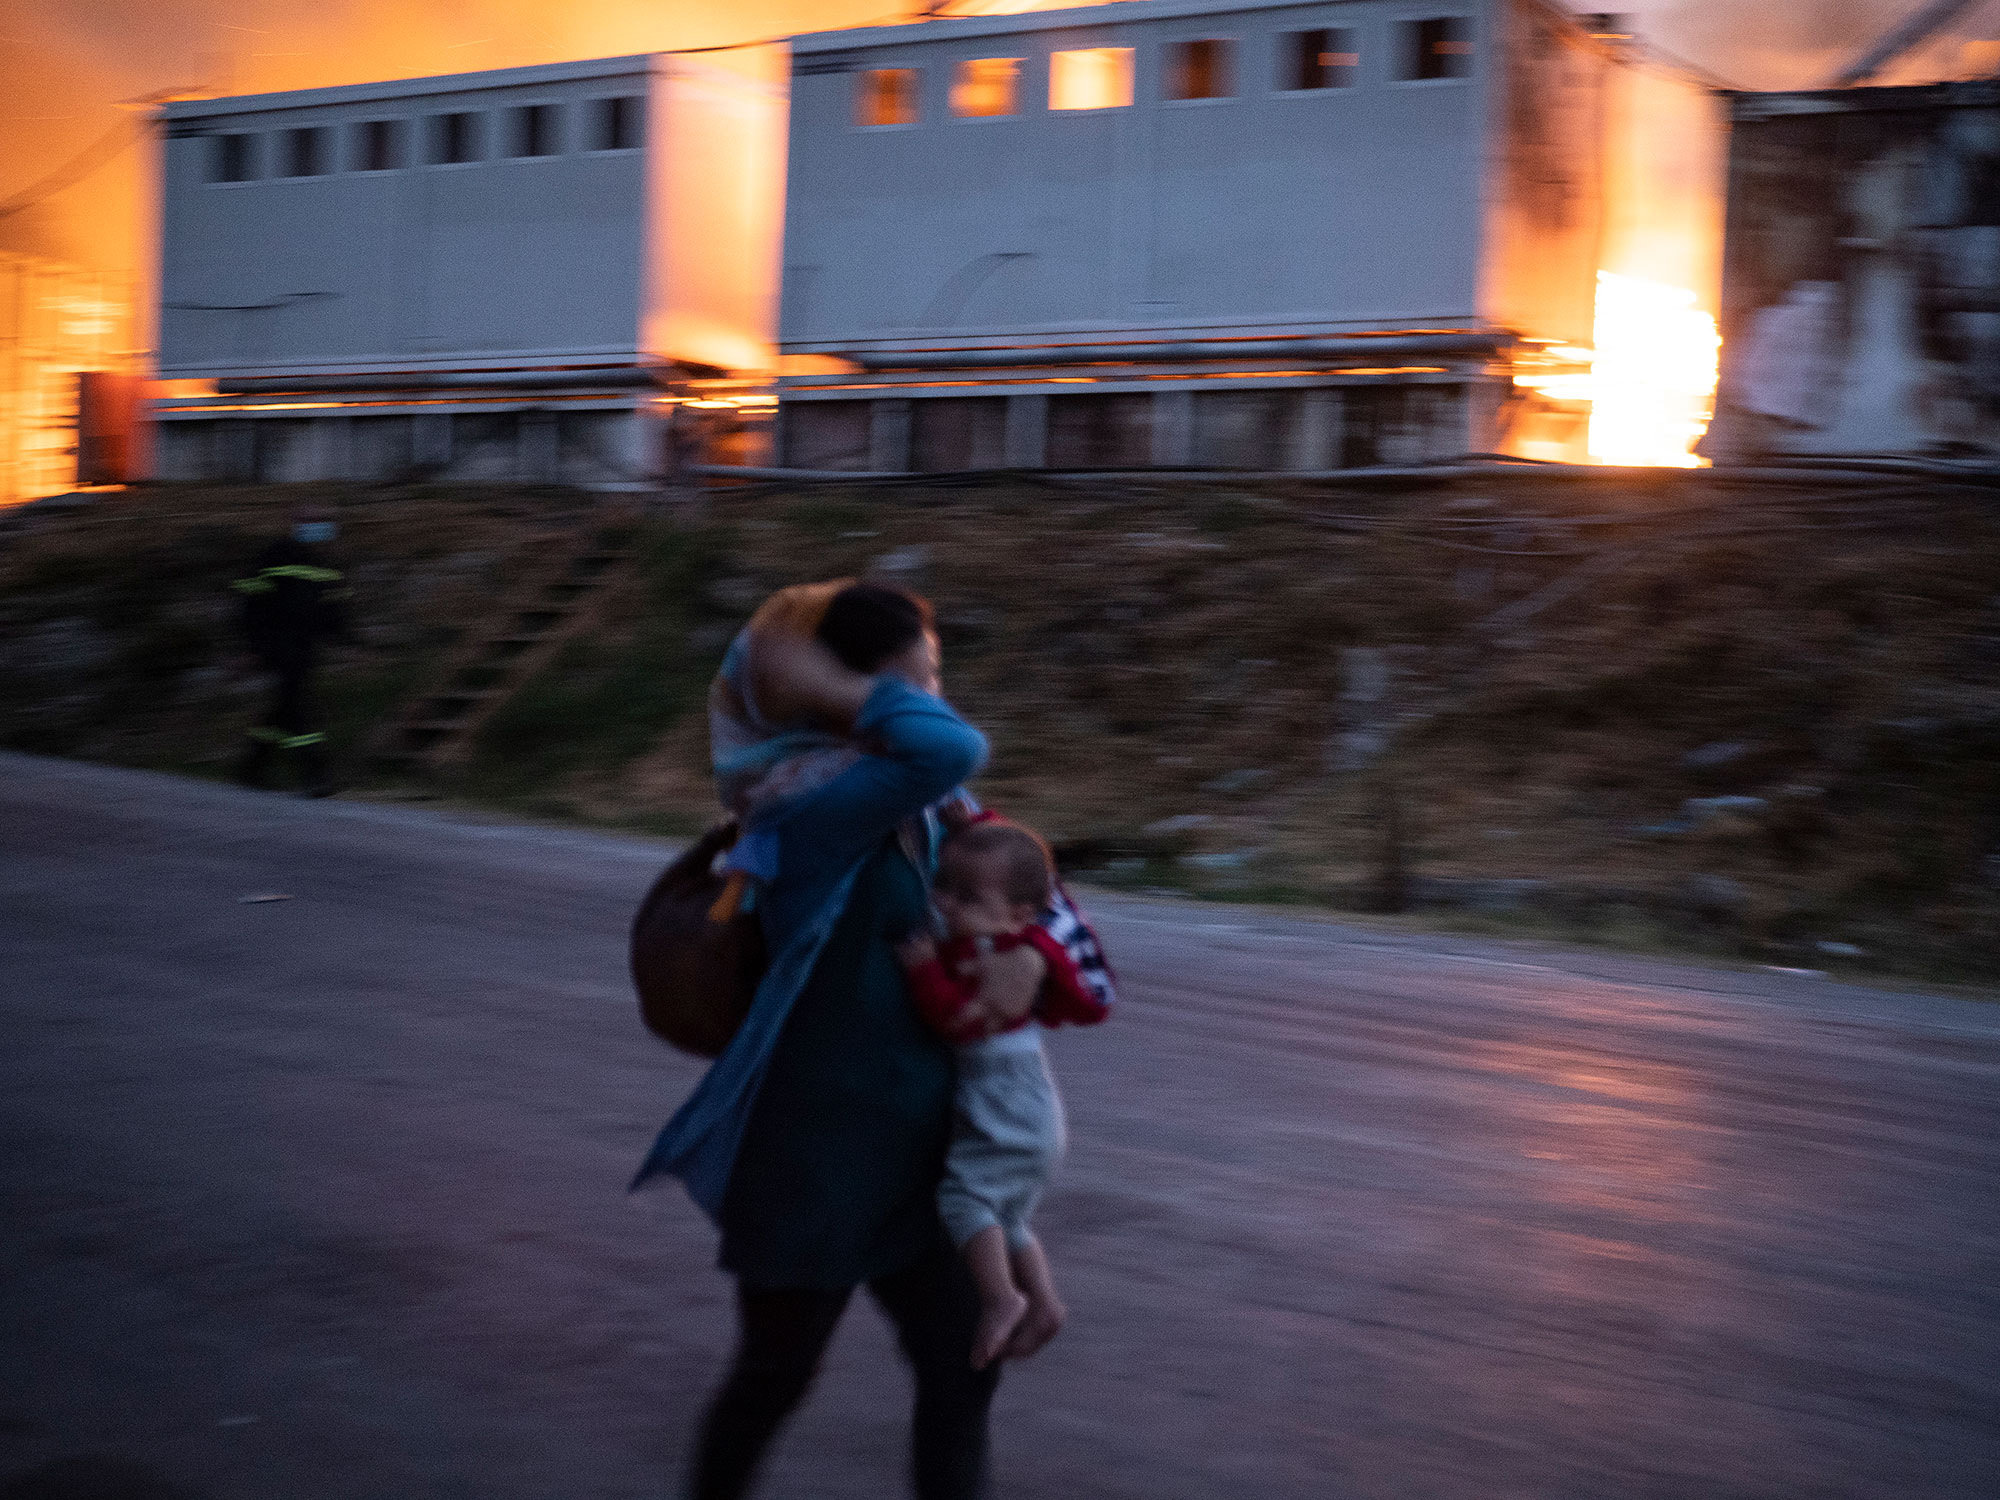 希臘，列斯伏斯，莫里亞難民營，2020年9月9日。一場大火摧毀了大部分難民營的次日又爆發了一場大火，燒毀了整座難民營。（攝影／Enri Canaj／Magnum Photos）